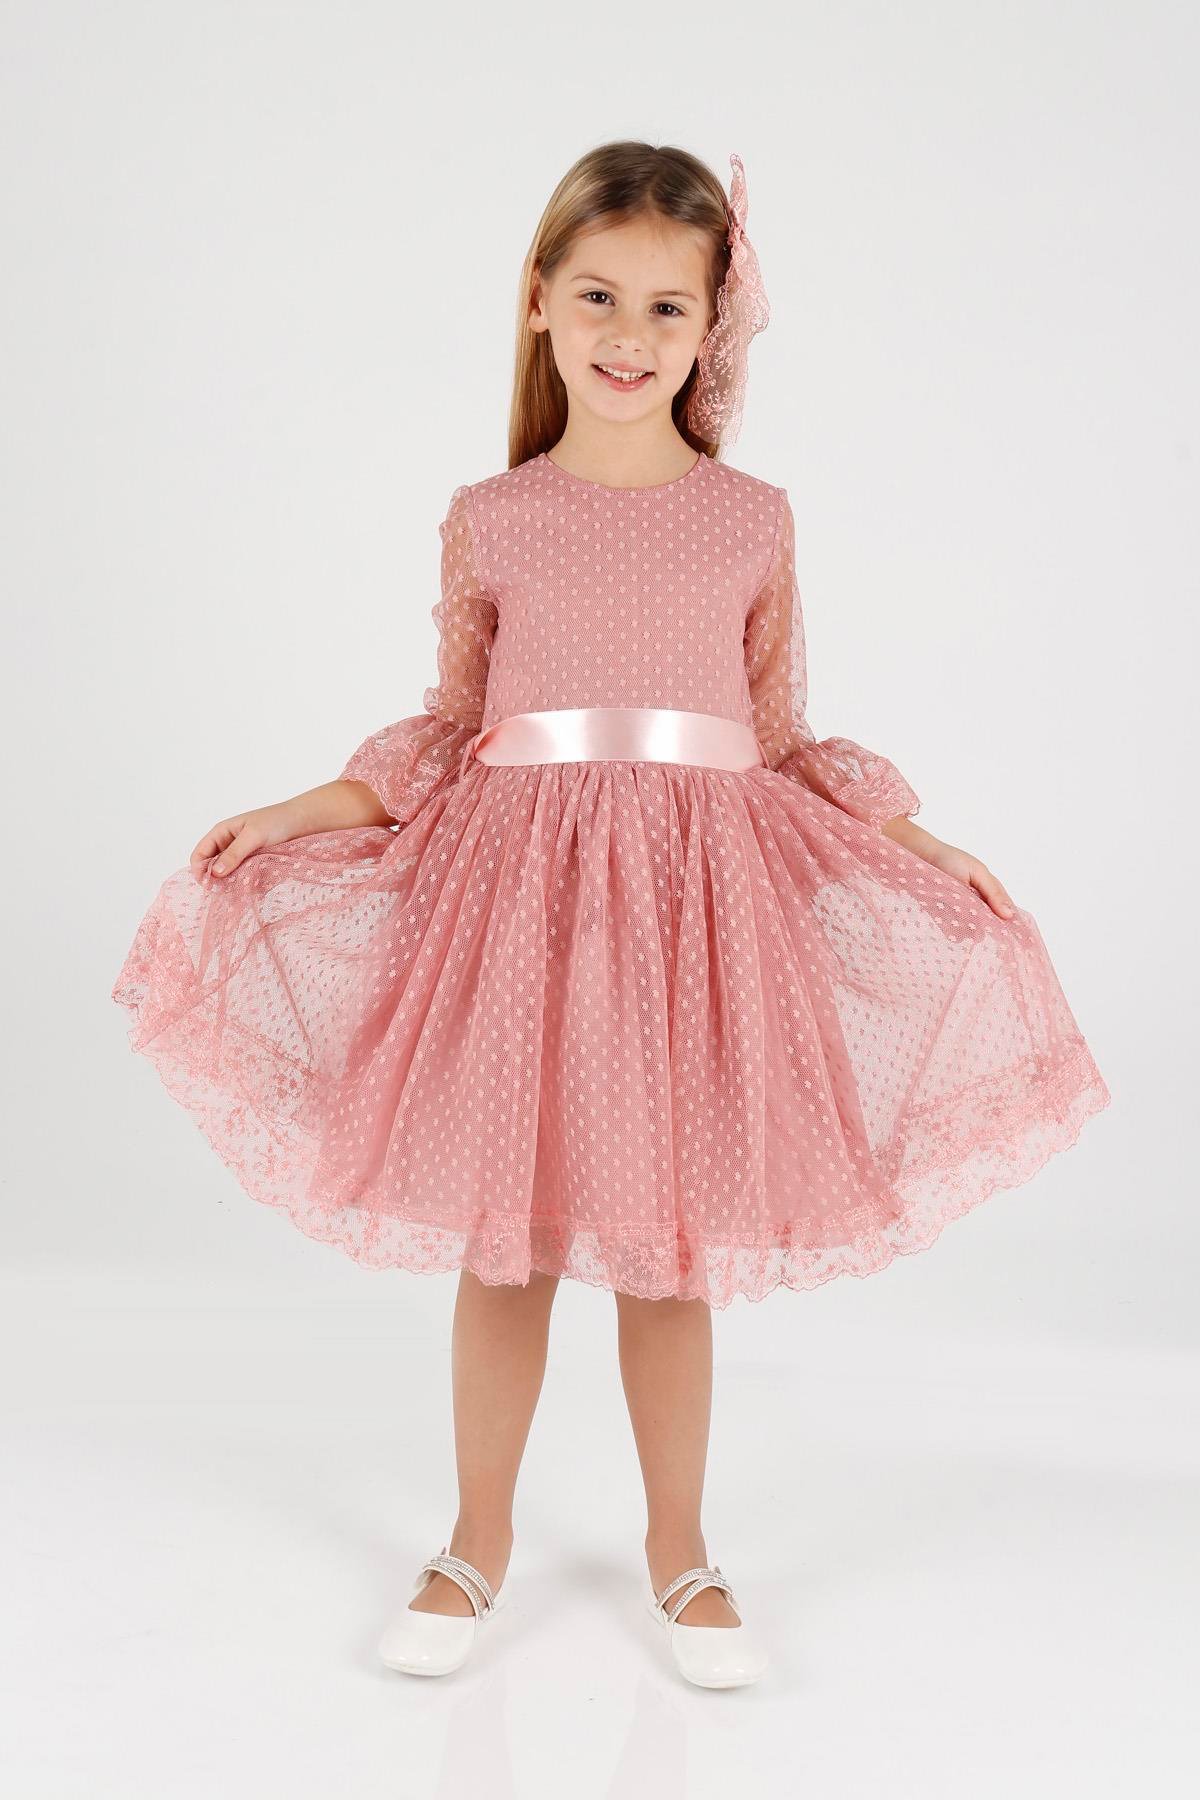 Ahengim Kız Çocuk Elbise Kız Çocuk Tokalı Elbise Kız Elbise Tül Dantel  Elbise Ak2209 - Ahengim - Online Giyim Mağazası